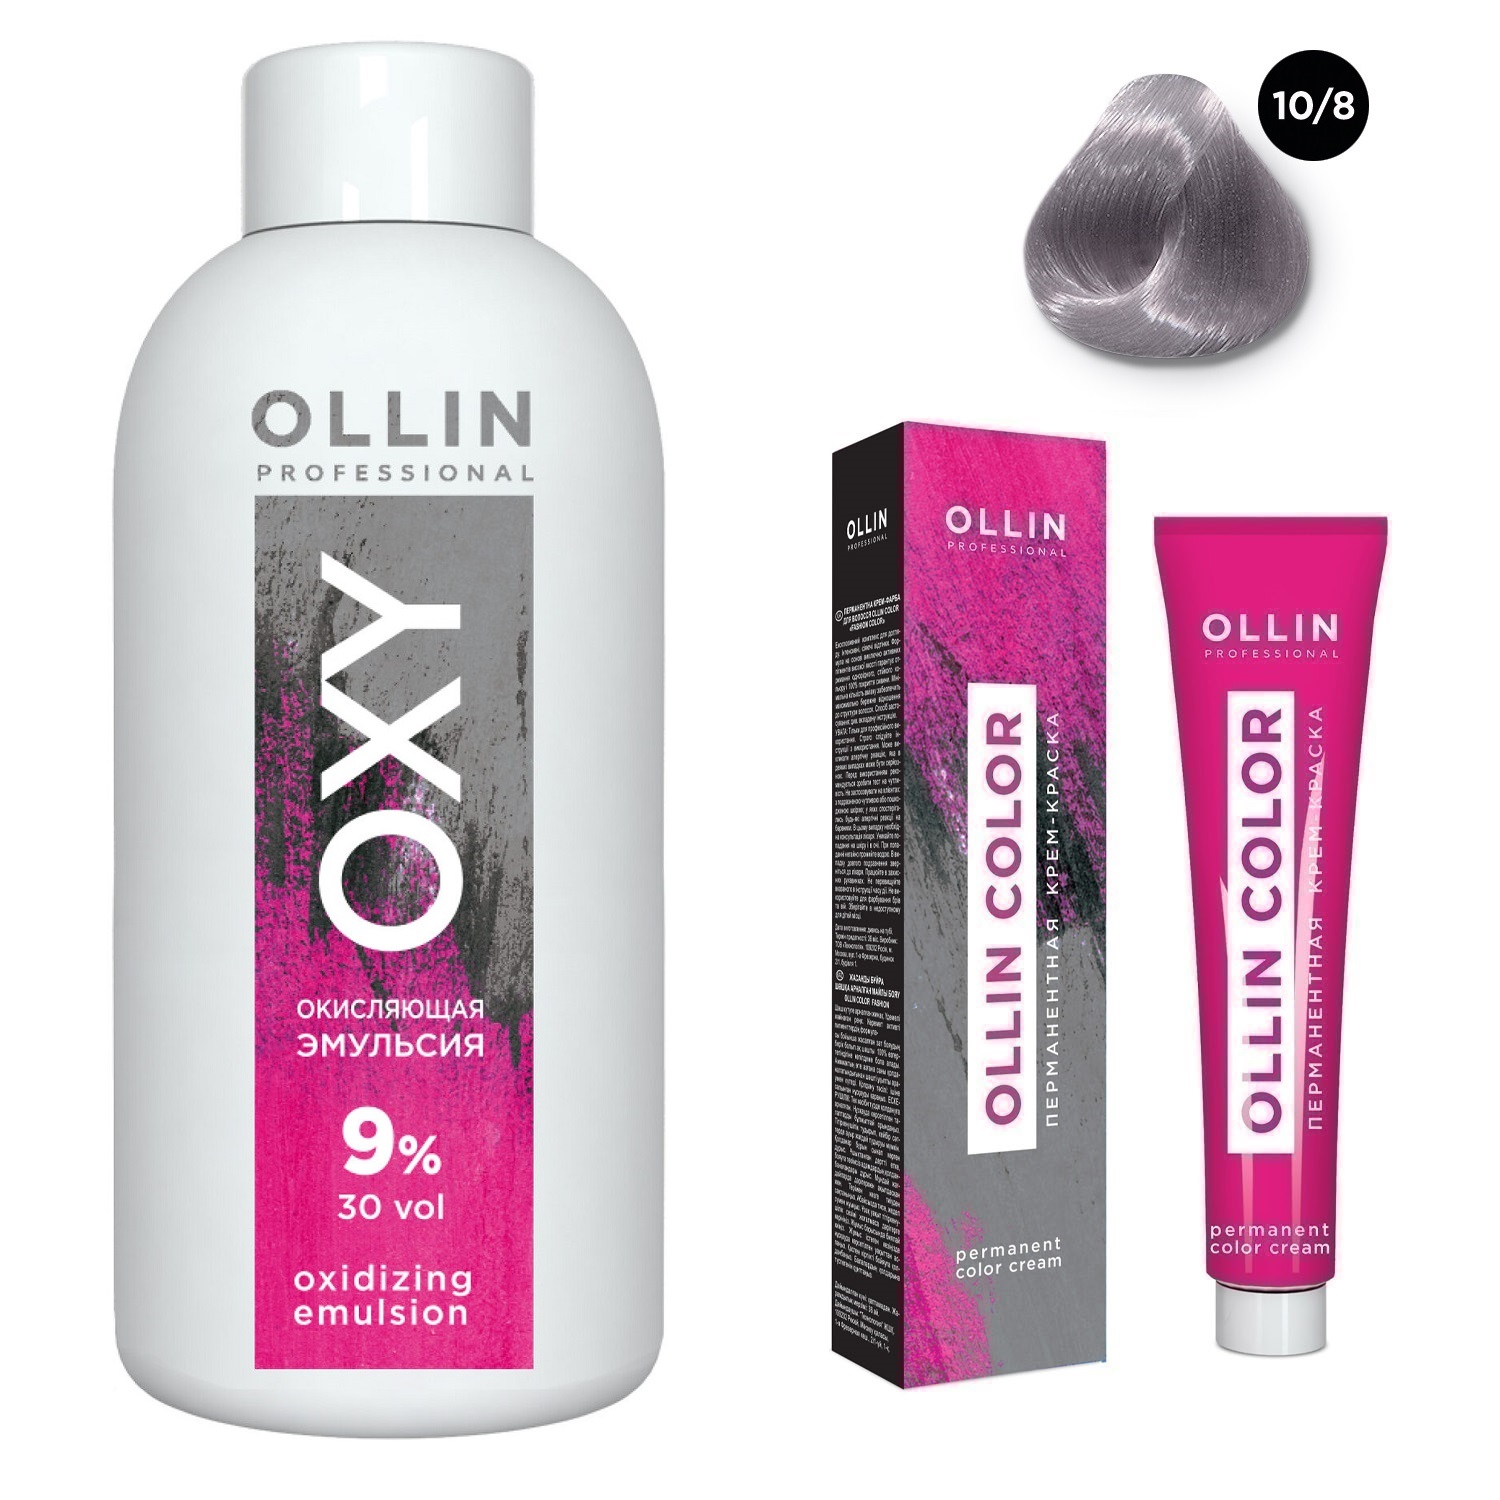 Ollin Professional Набор Перманентная крем-краска для волос Ollin Color оттенок 10/8 светлый блондин жемчужный 100 мл + Окисляющая эмульсия Oxy 9% 150 мл (Ollin Professional, Ollin Color)